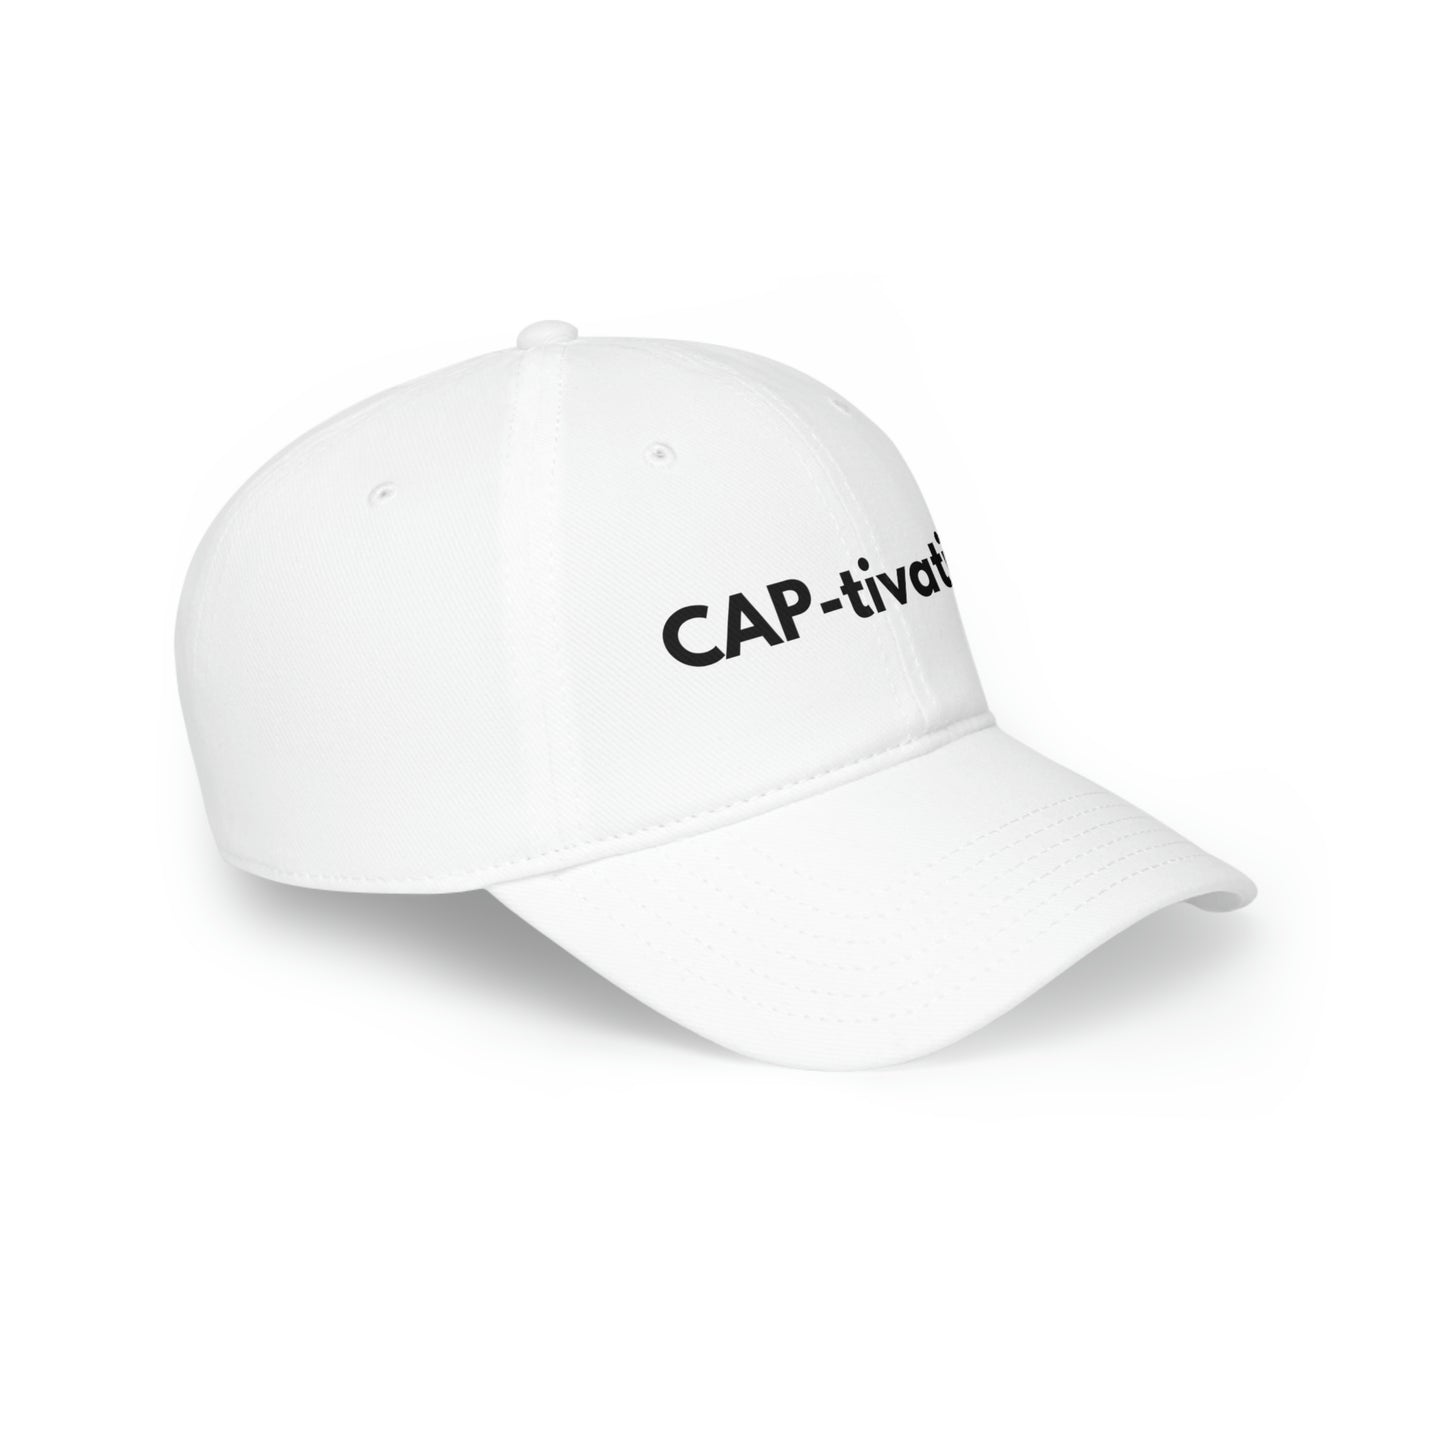 CAP-tivating